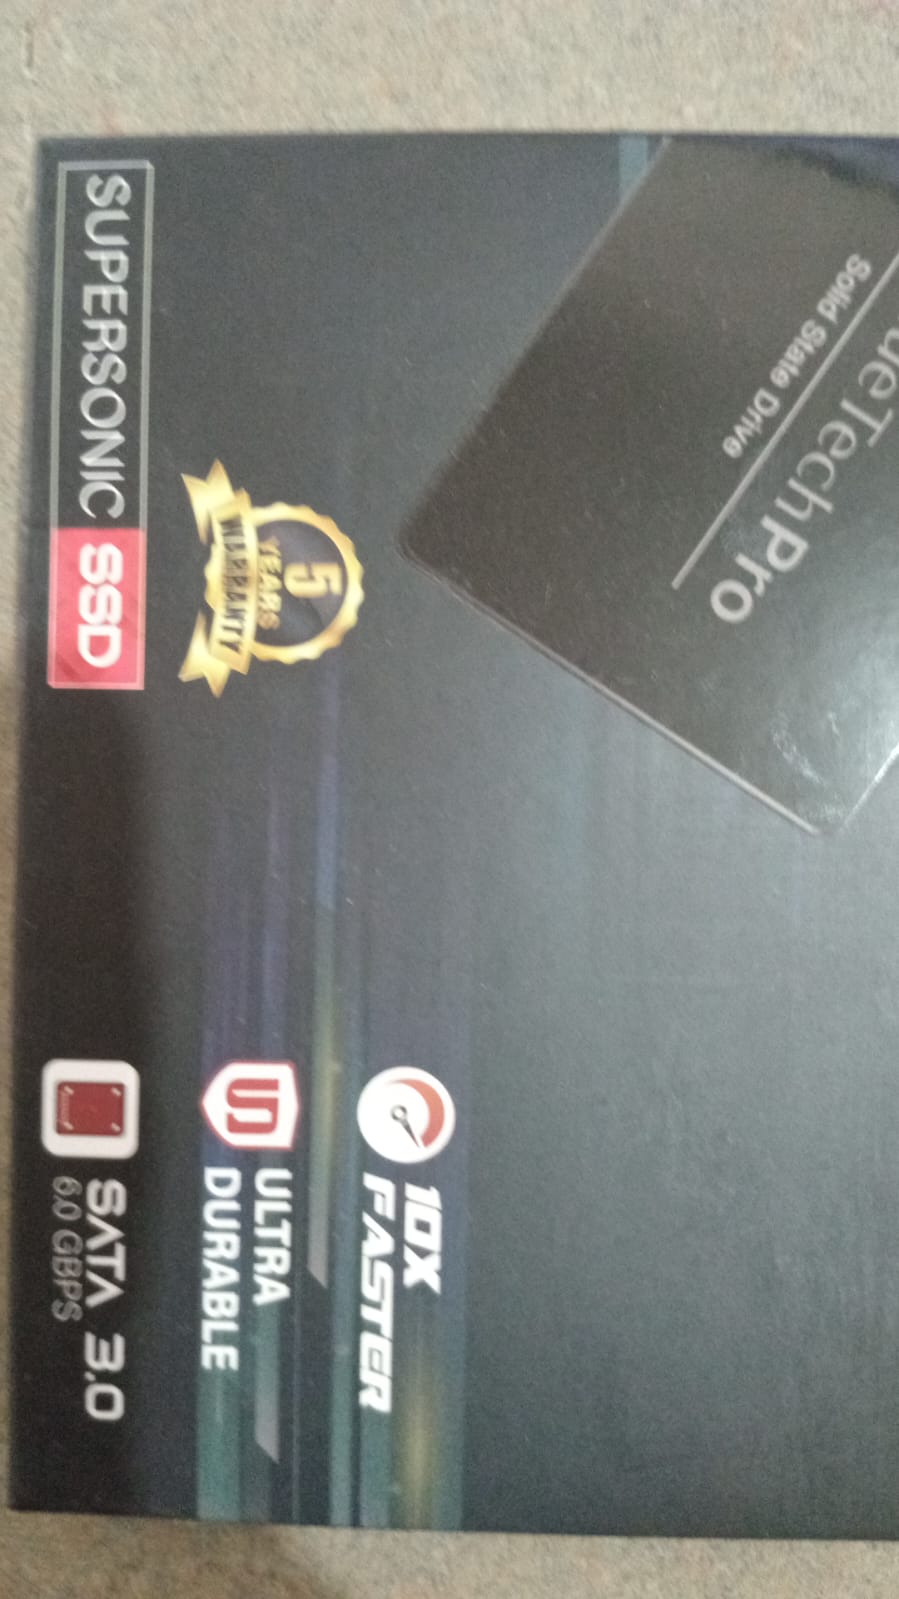 Discos 256 GB SSD NUEVOS Mejores precios de el Mercado ! Foto 7171379-2.jpg